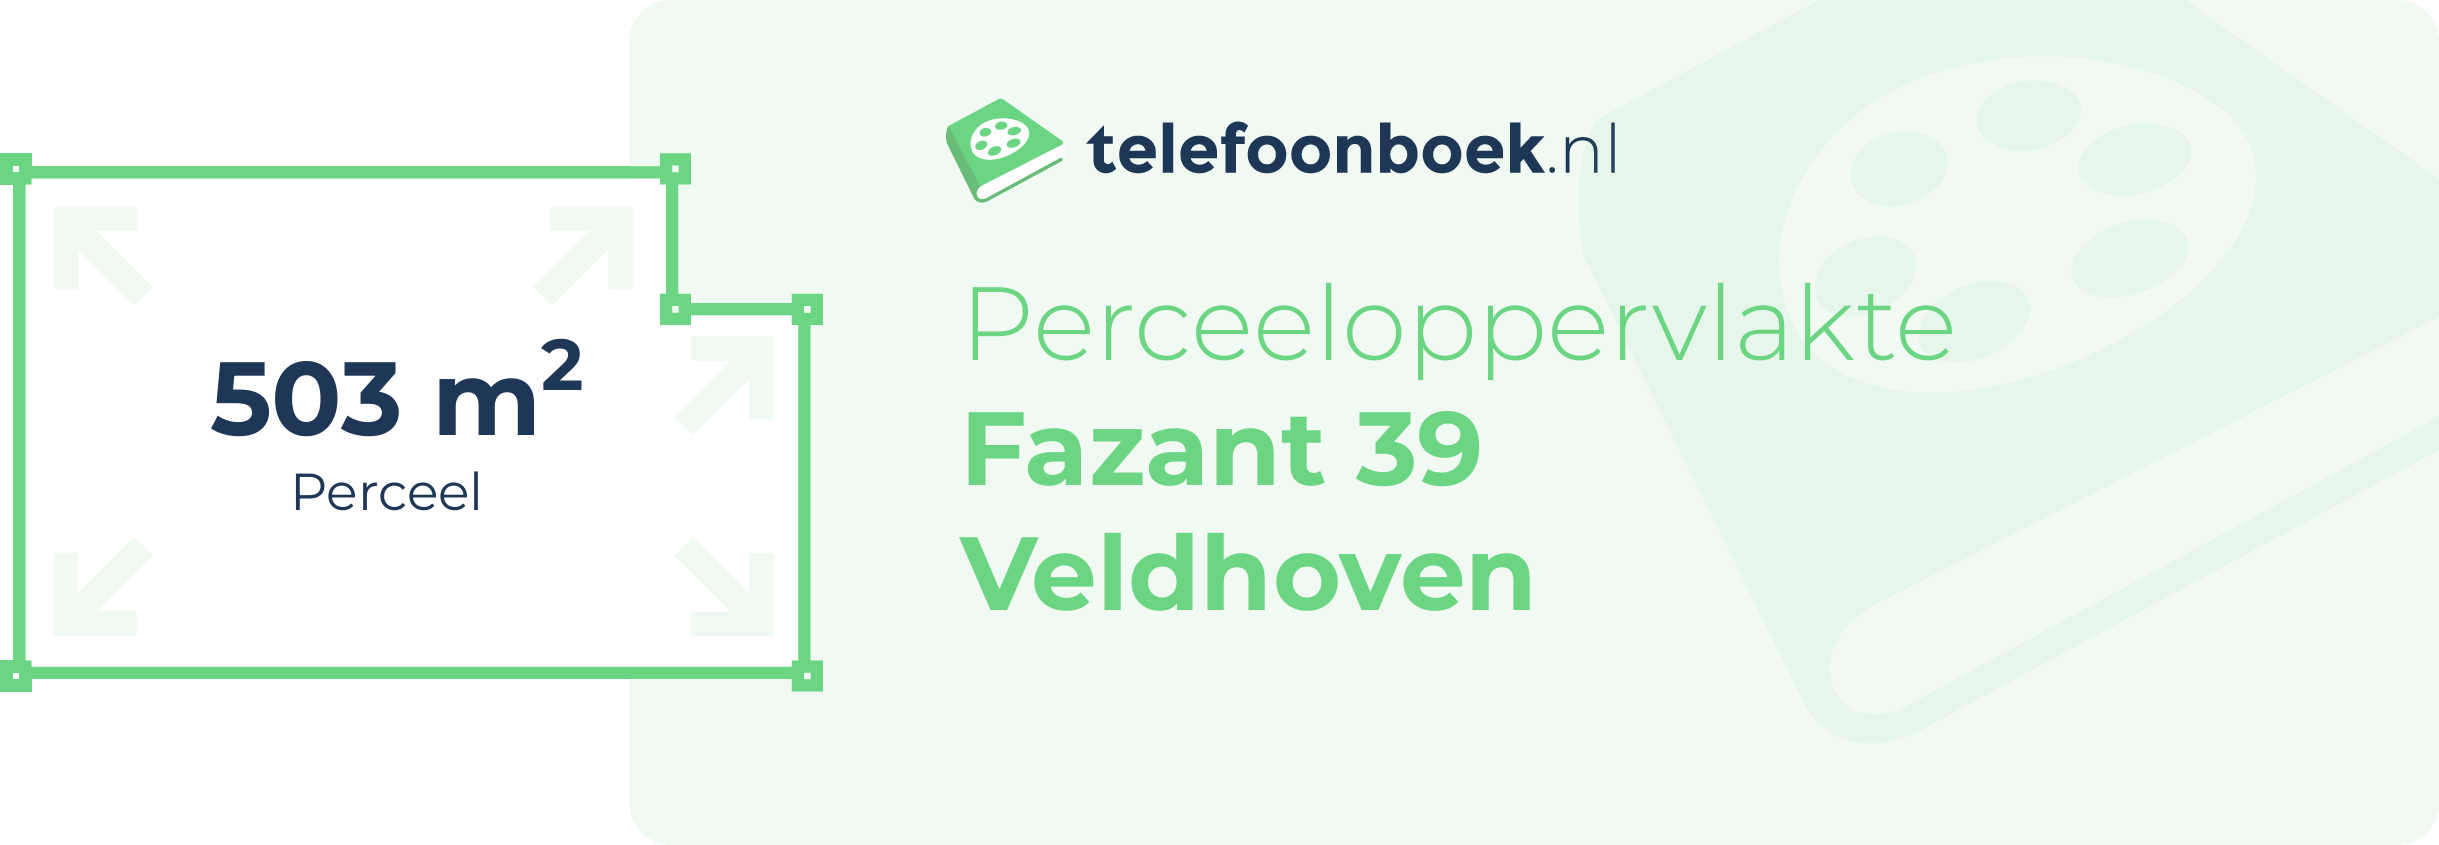 Perceeloppervlakte Fazant 39 Veldhoven